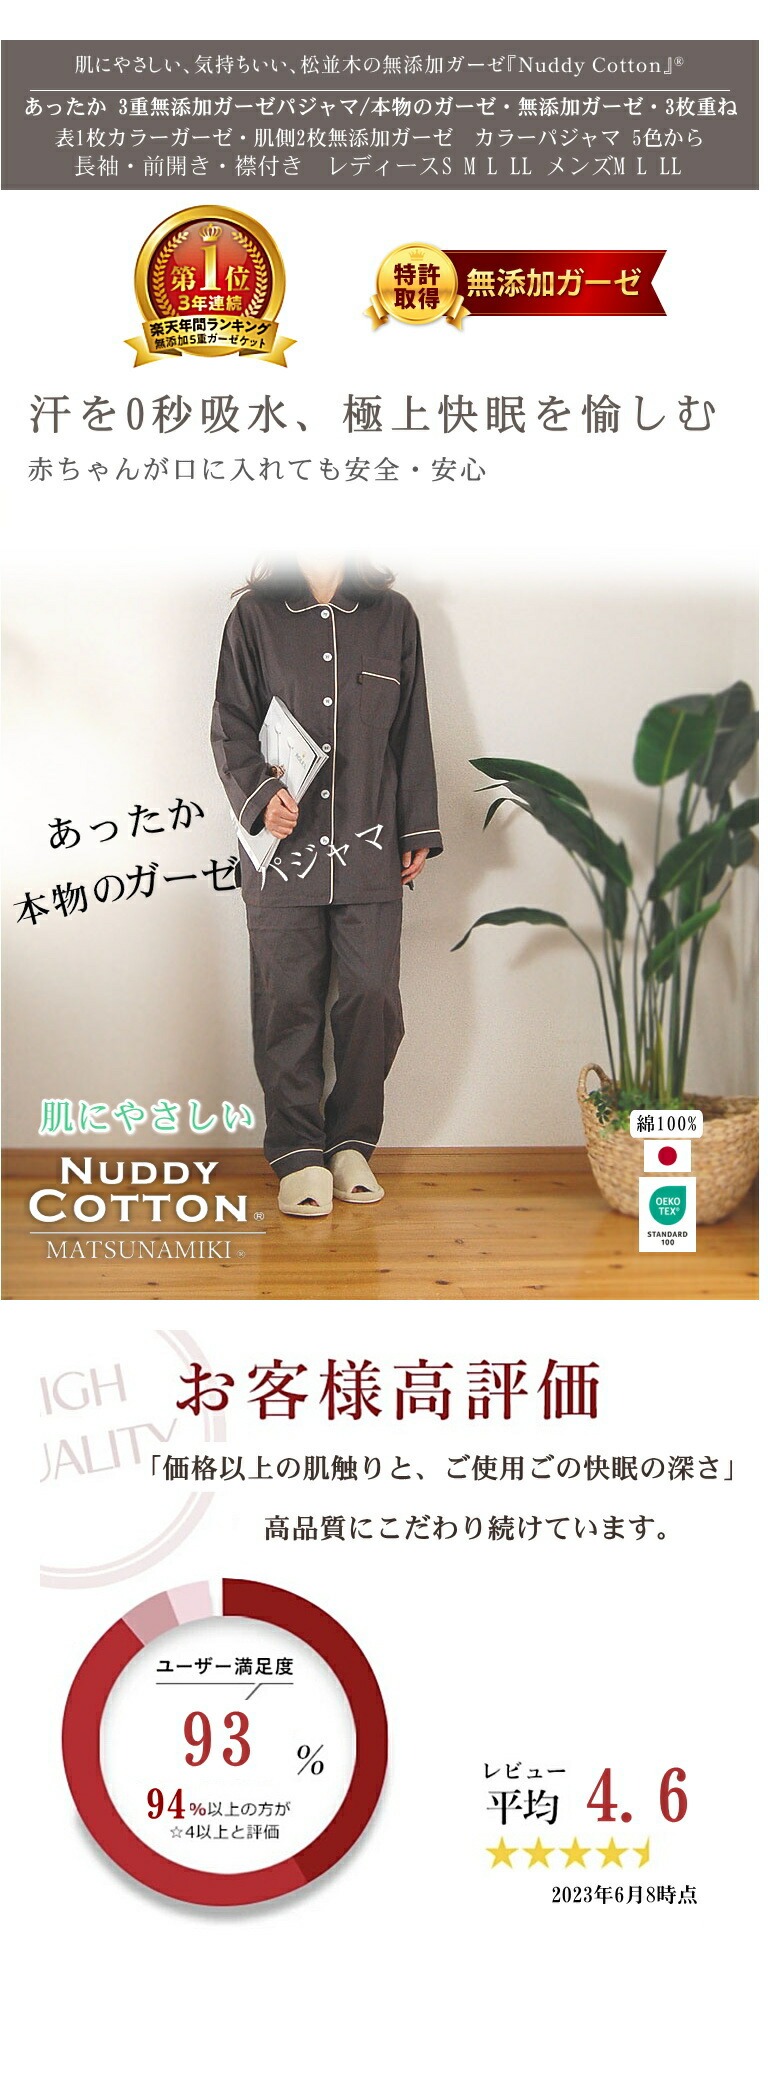 【特許】無添加ガーゼ/無添加ガーゼ 肌に優しい 松並木 ガーゼパジャマ レディース メンズ  日本製